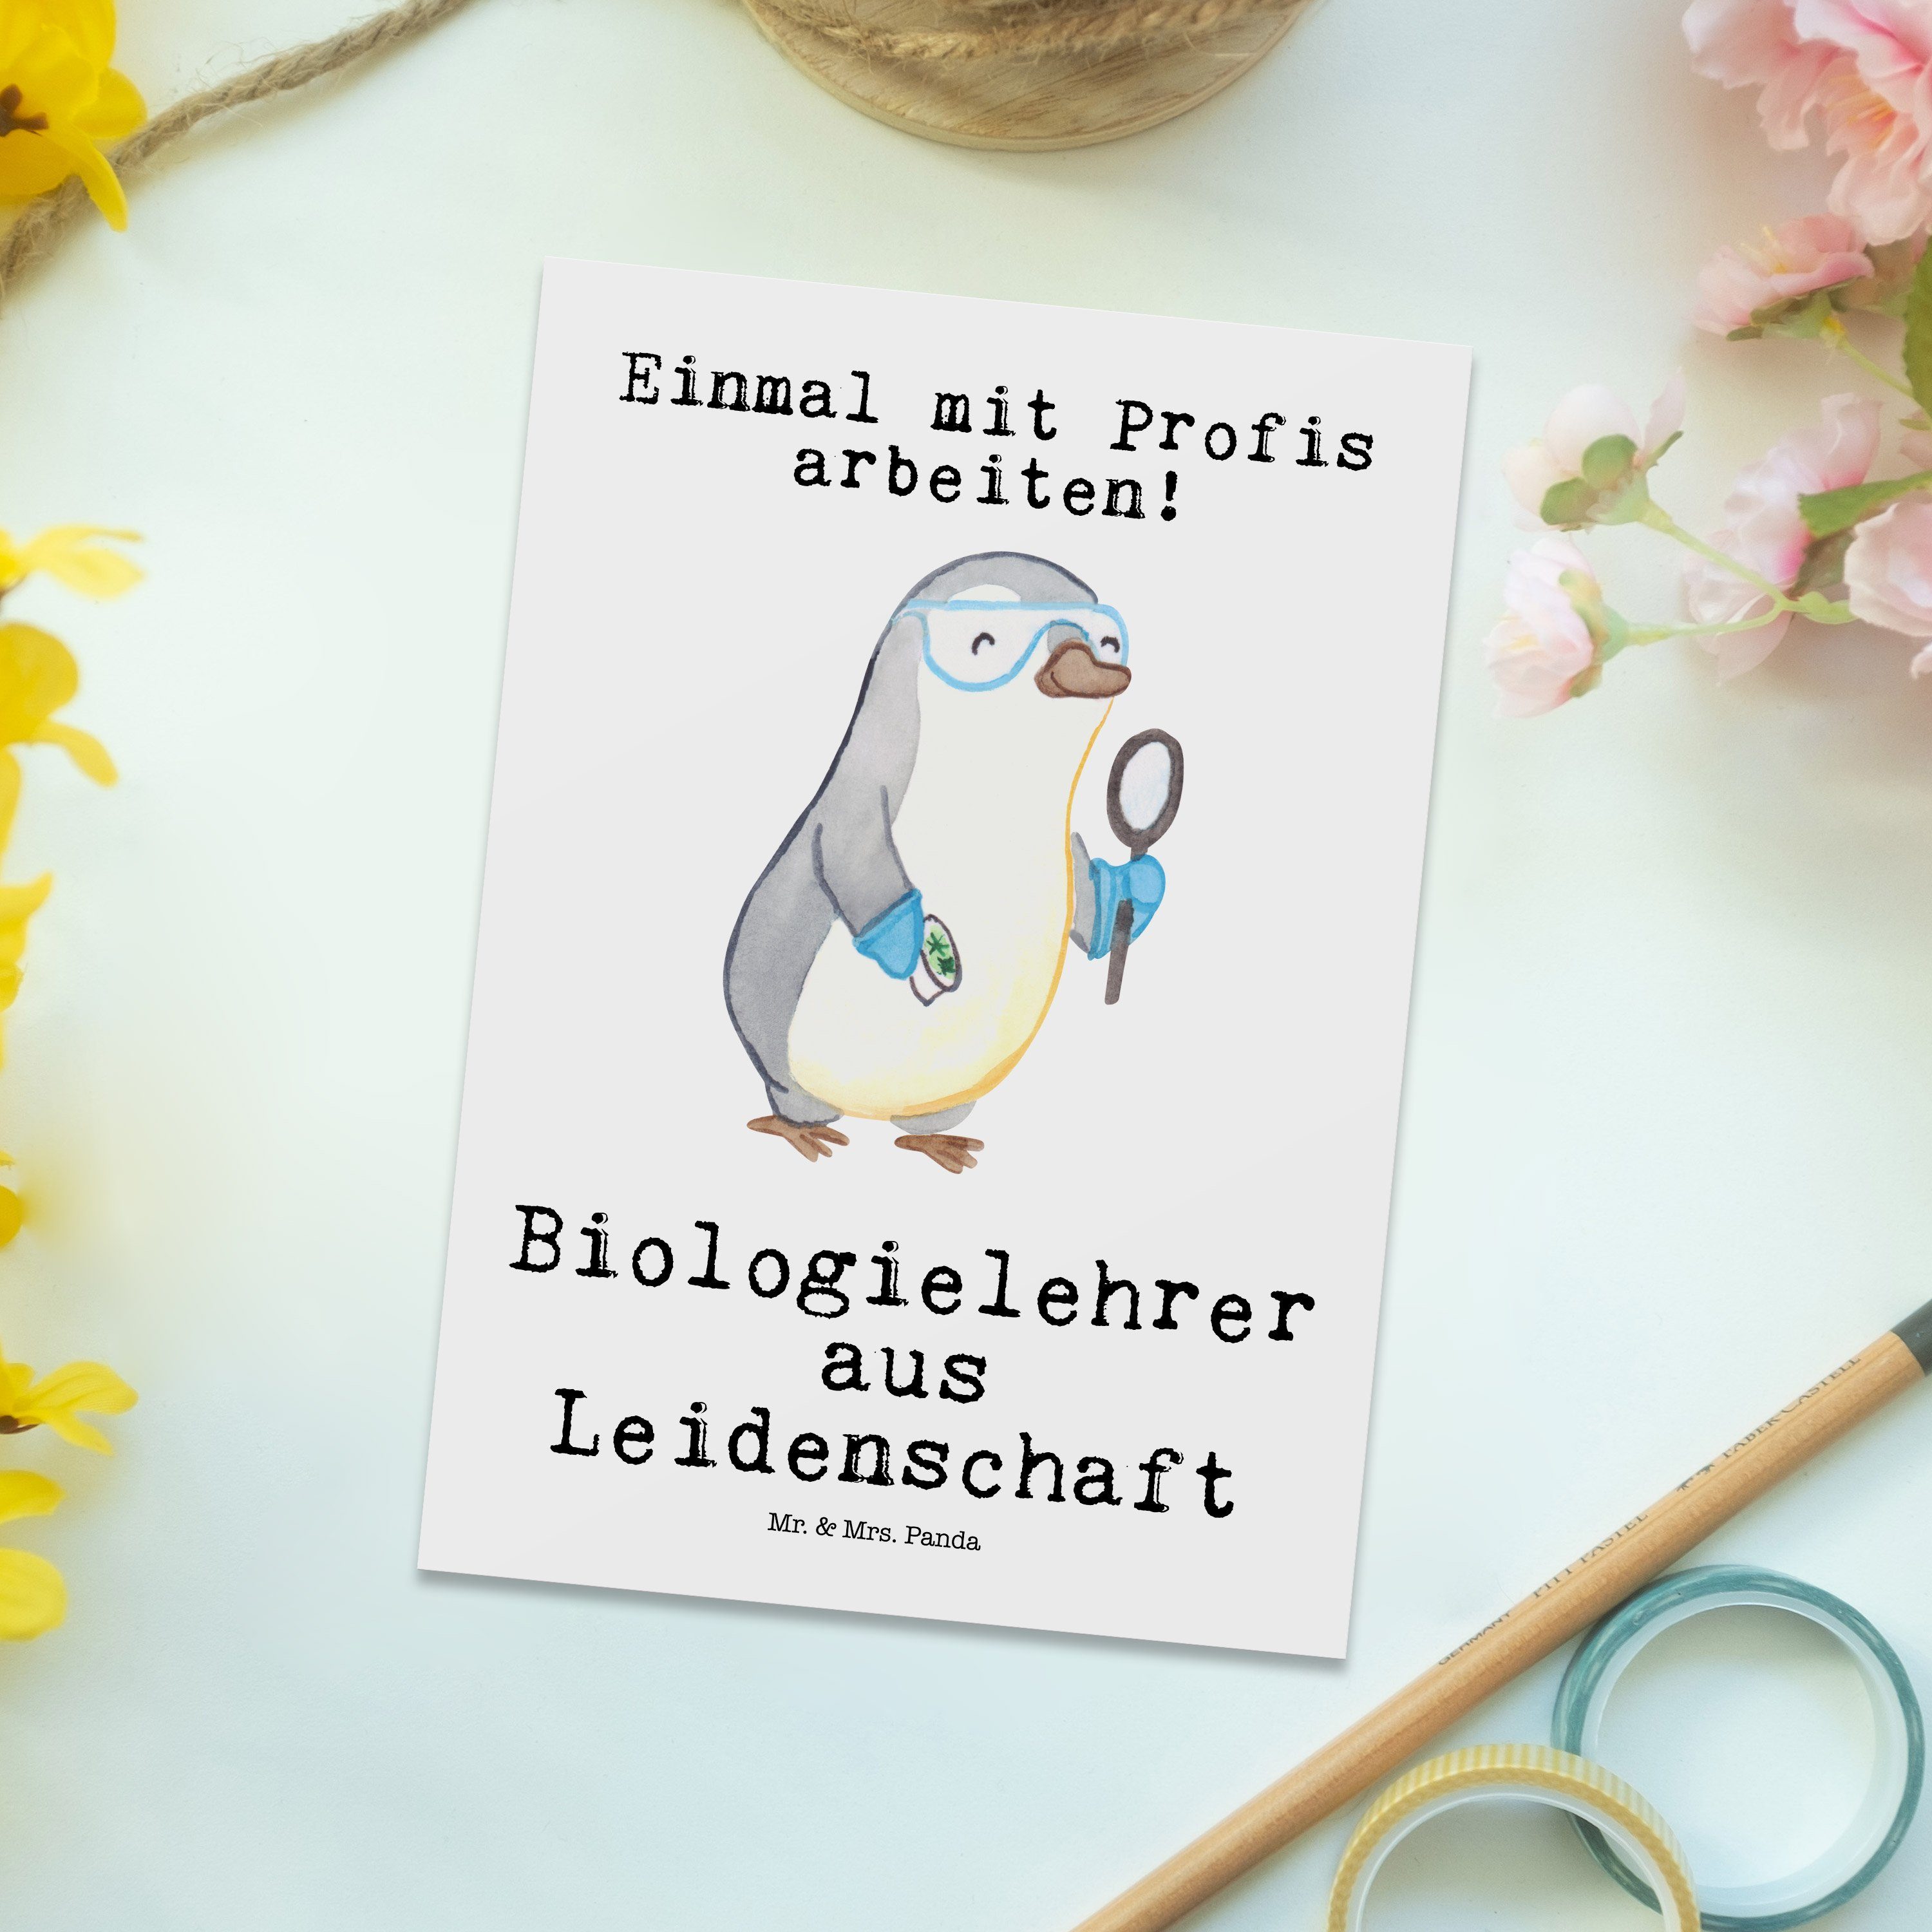 Postkarte Biounter Panda Mrs. & Abschied, Geschenk, - Mr. - Weiß Leidenschaft aus Biologielehrer